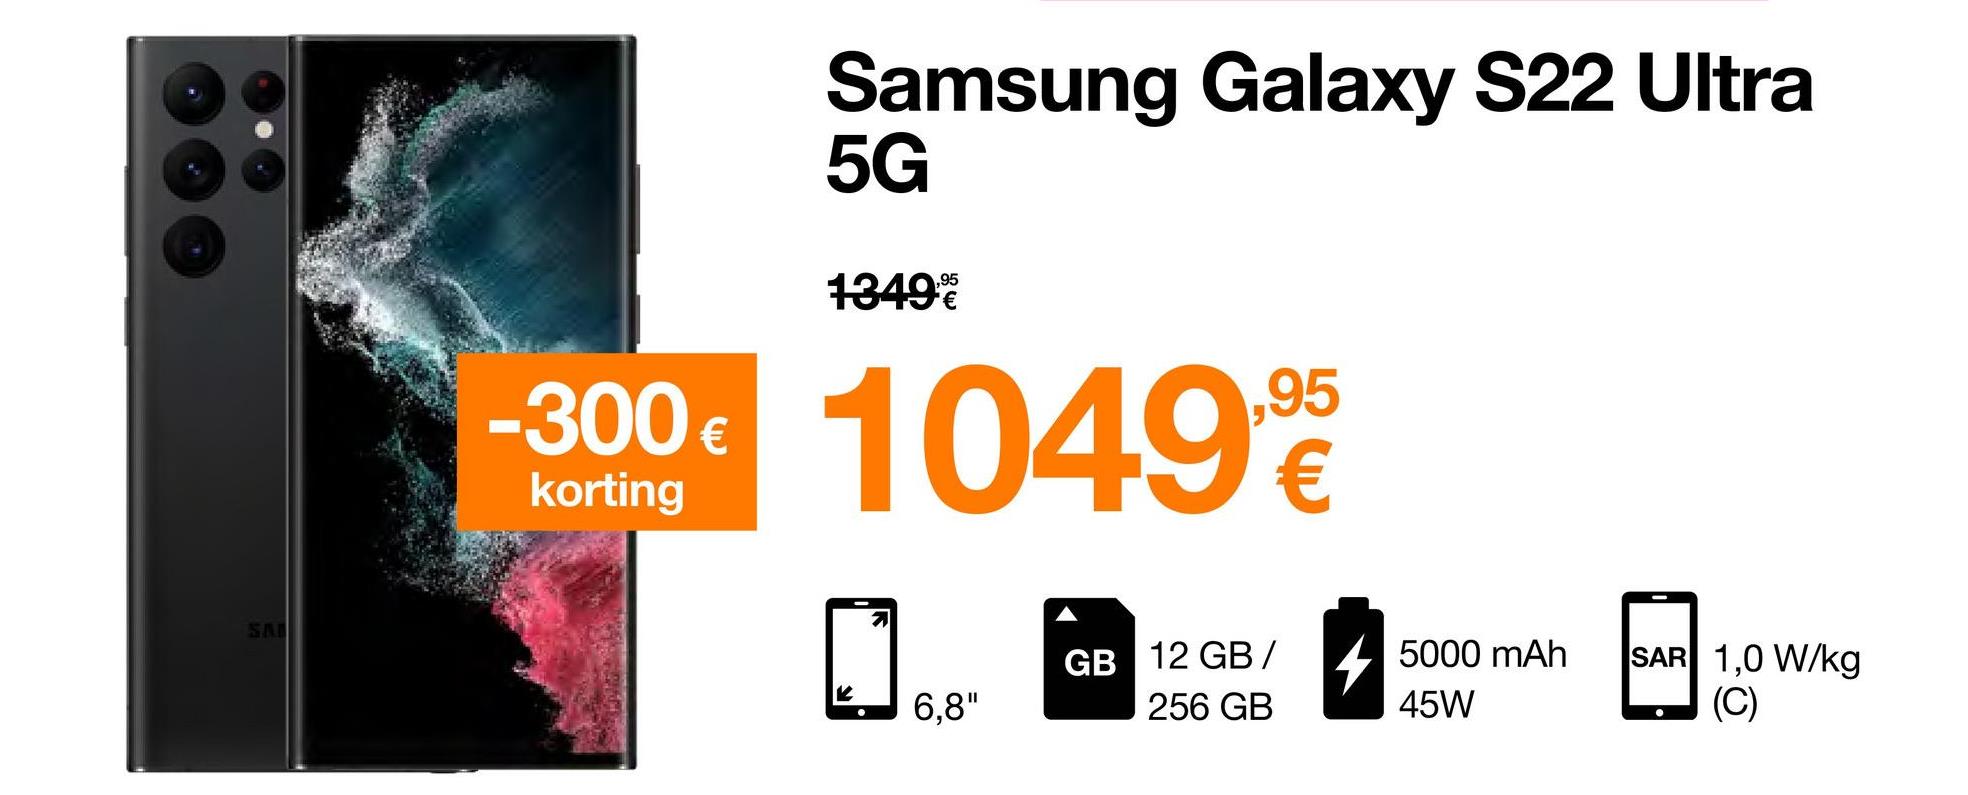 SAI
Samsung Galaxy S22 Ultra
5G
1349€
-300 € 1049,95
korting
6,8"
GB 12 GB/
256 GB
5000 mAh
45W
SAR 1,0 W/kg
(C)